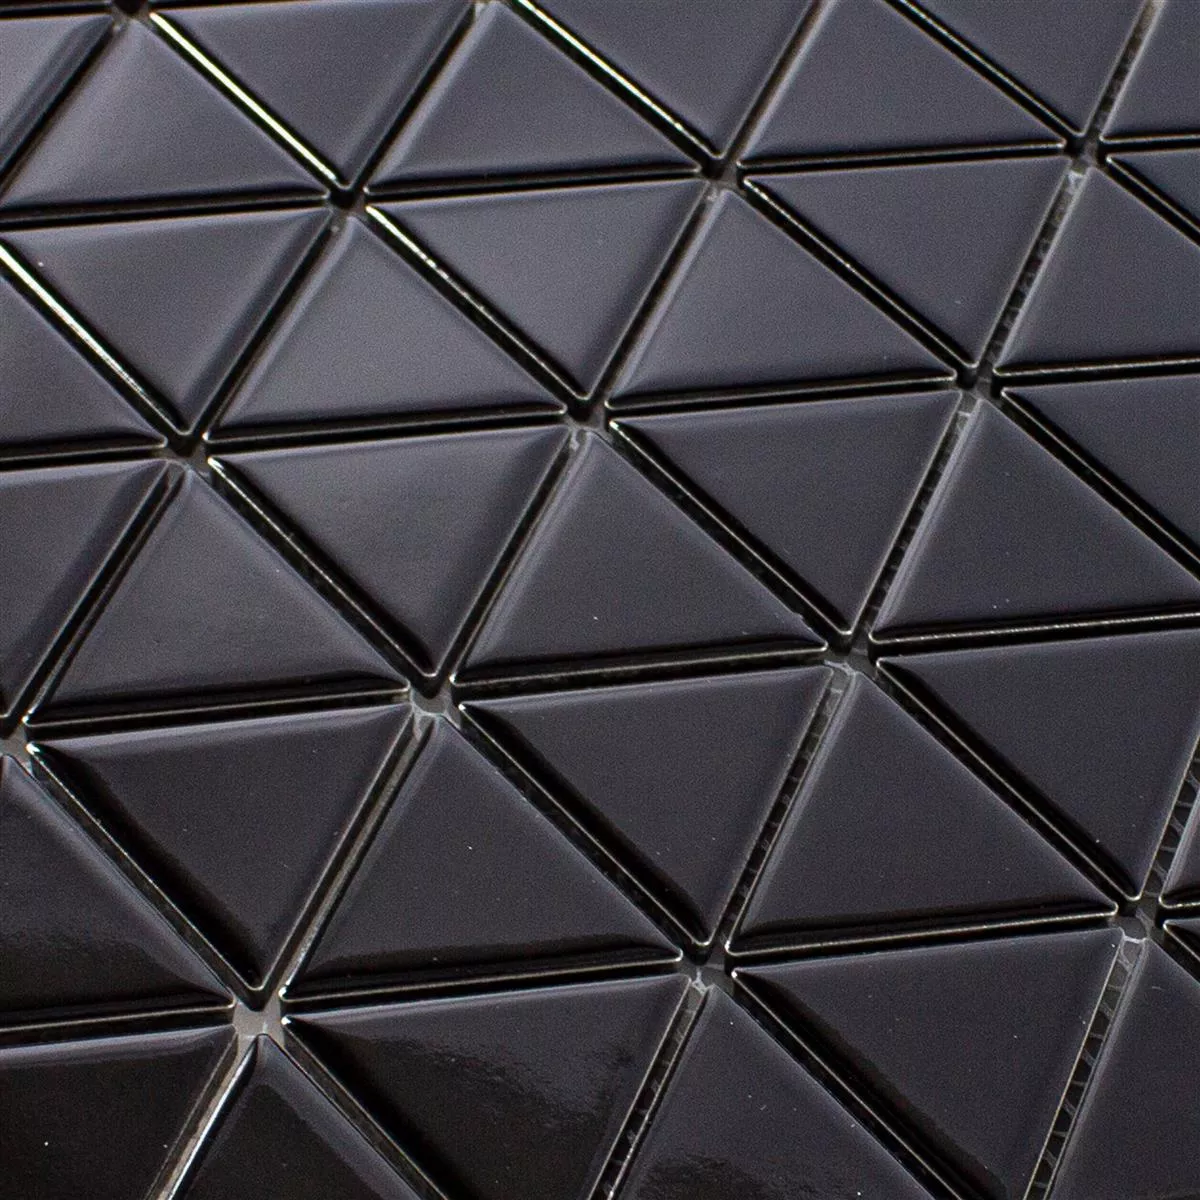 Muster von Keramik Mosaik Fliesen Arvada Dreieck Schwarz Glänzend